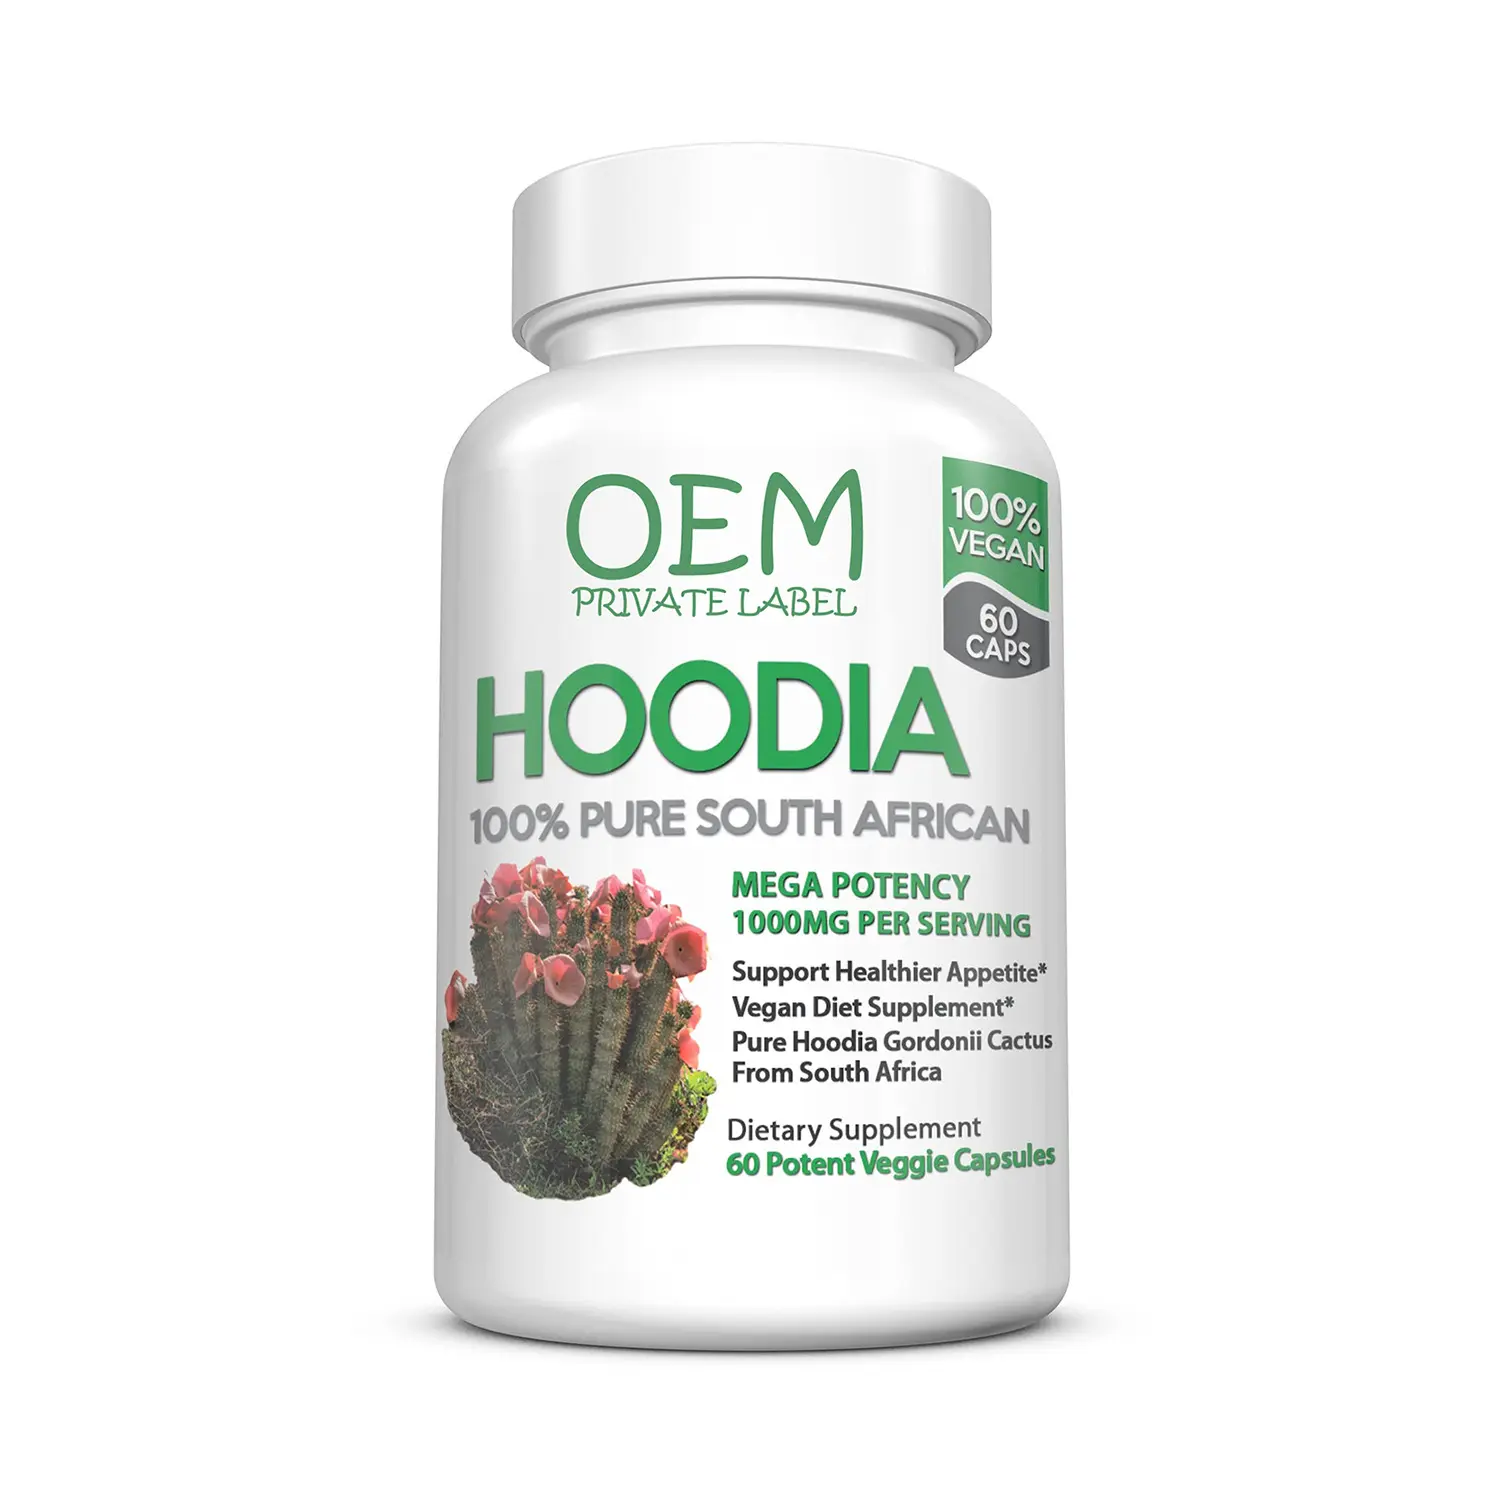 Capsule Hoodia di alta qualità supportano l'appetito sano per ridurre il peso Hoodia capsule integratori